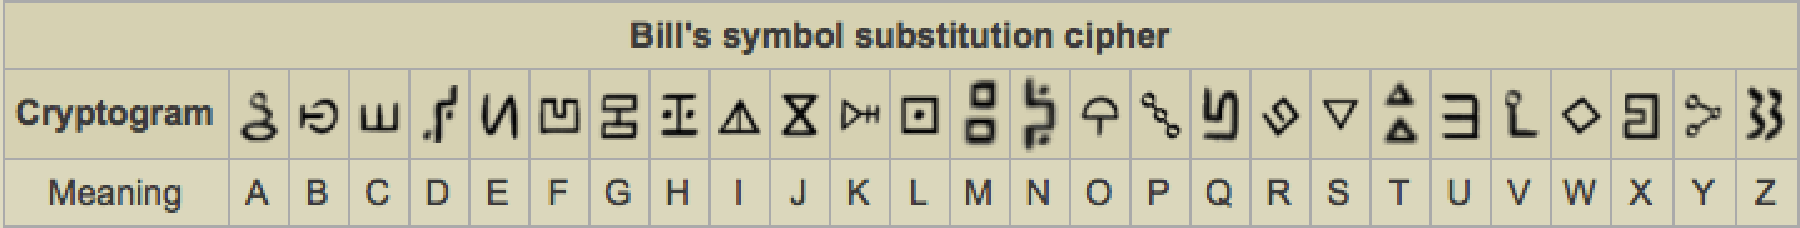 Bill's symbol substitution